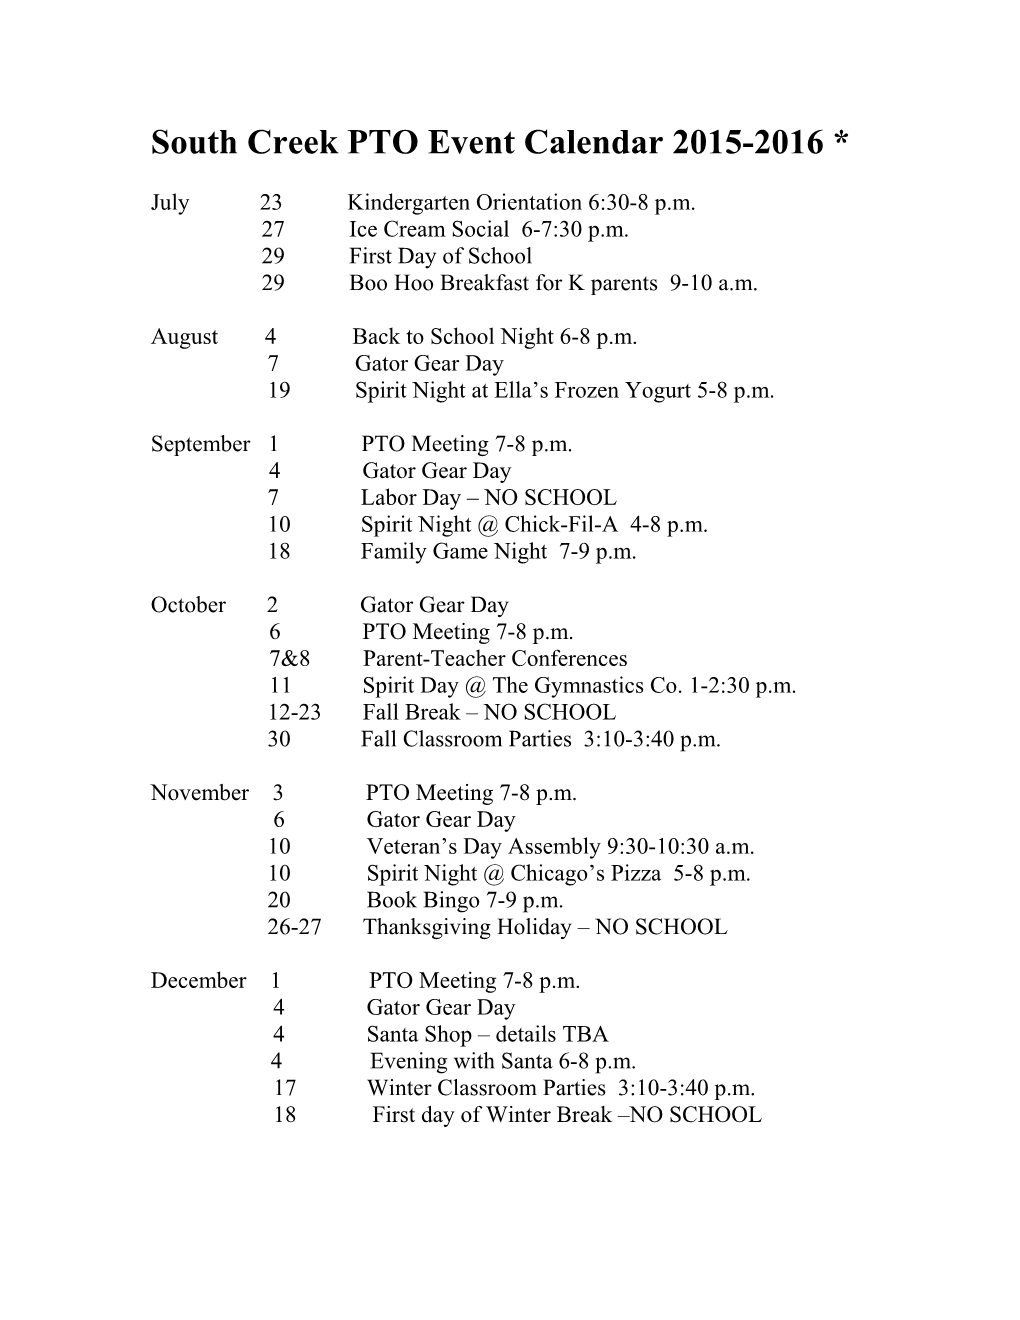 South Creek PTO Event Calendar 2014-2015